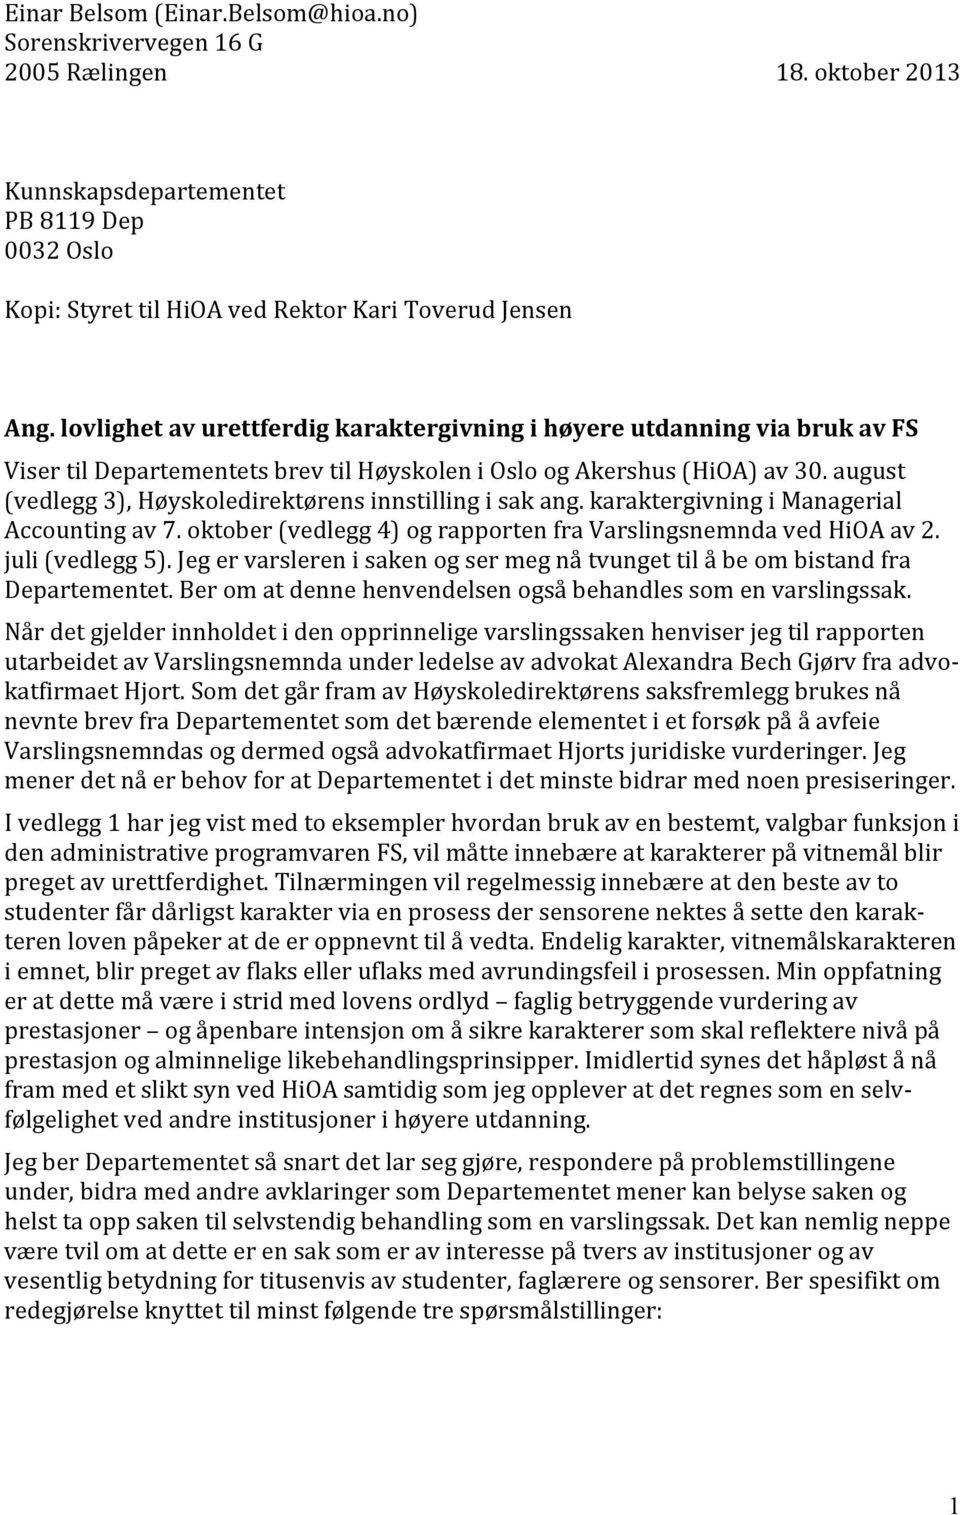 august (vedlegg 3), Høyskoledirektørens innstilling i sak ang. karaktergivning i Managerial Accounting av 7. oktober (vedlegg 4) og rapporten fra Varslingsnemnda ved HiOA av 2. juli (vedlegg 5).